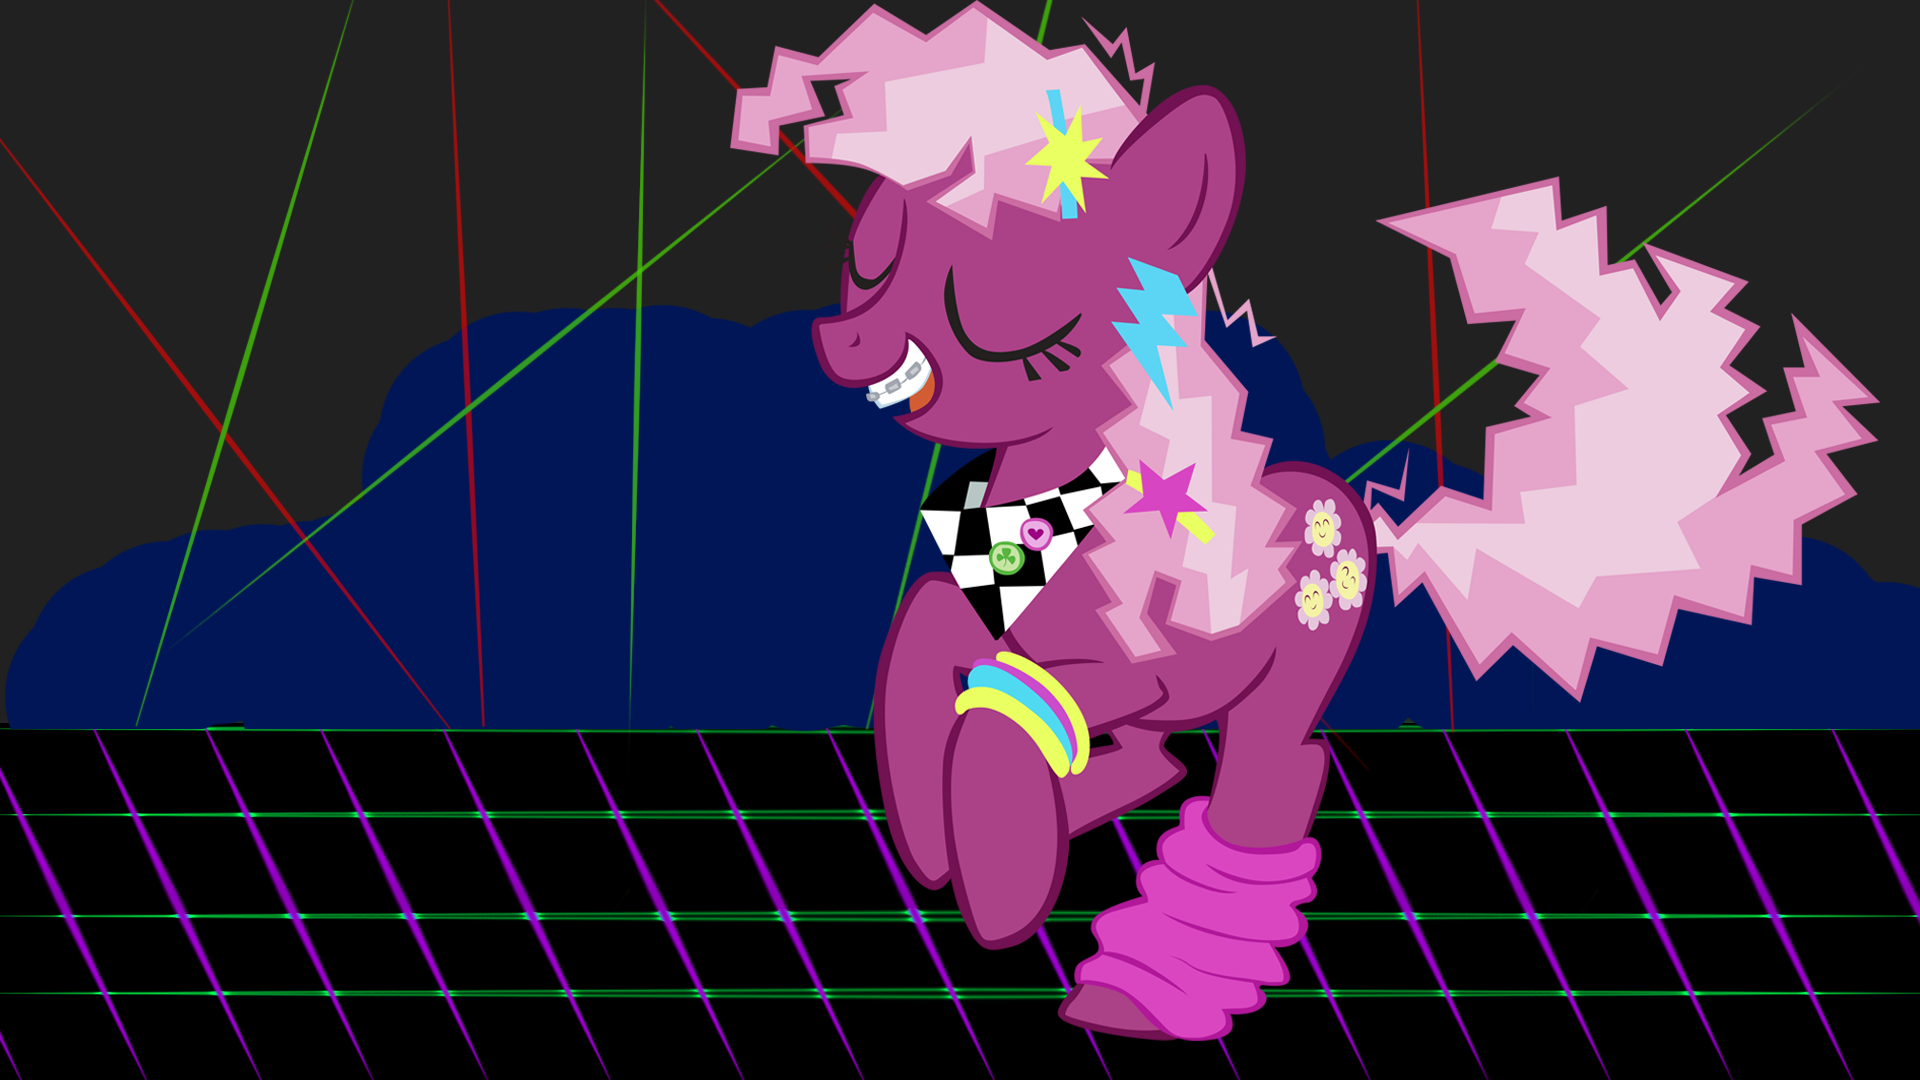 My Little Pony, Cheerilee, My Little Pony: Friendship is Magic - desktop wallpaper